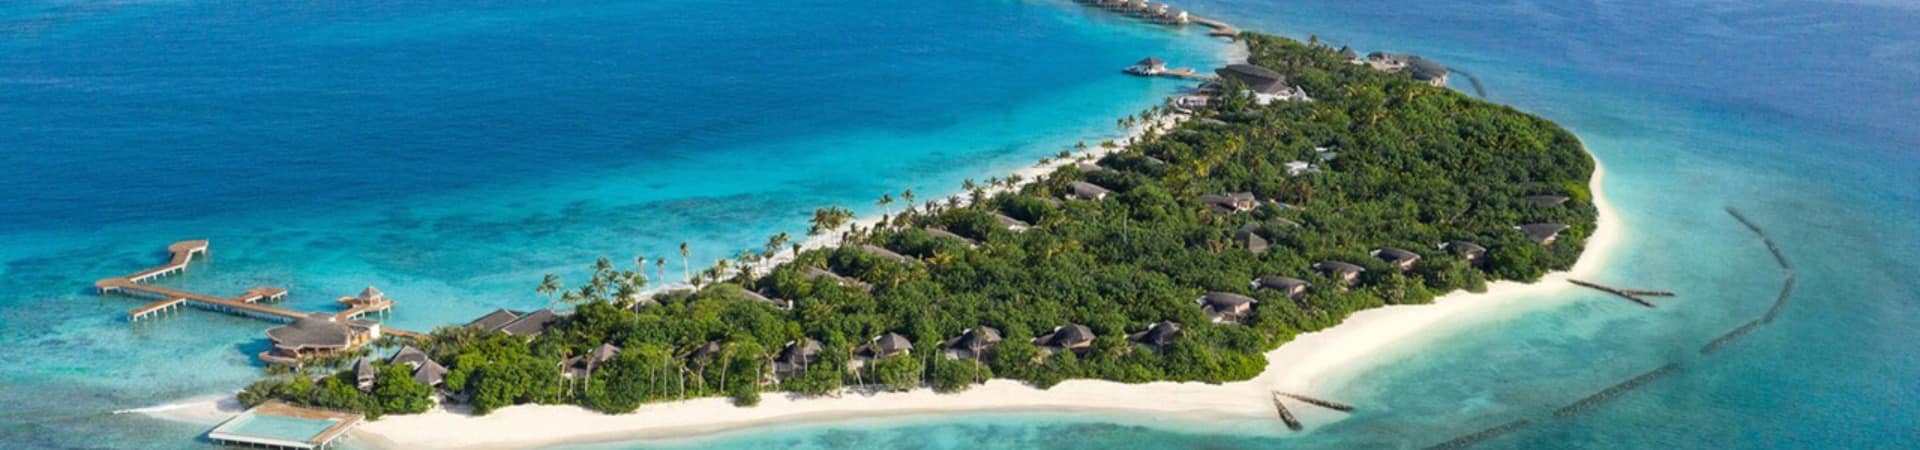 Jw marriott maldives vista aerea dia